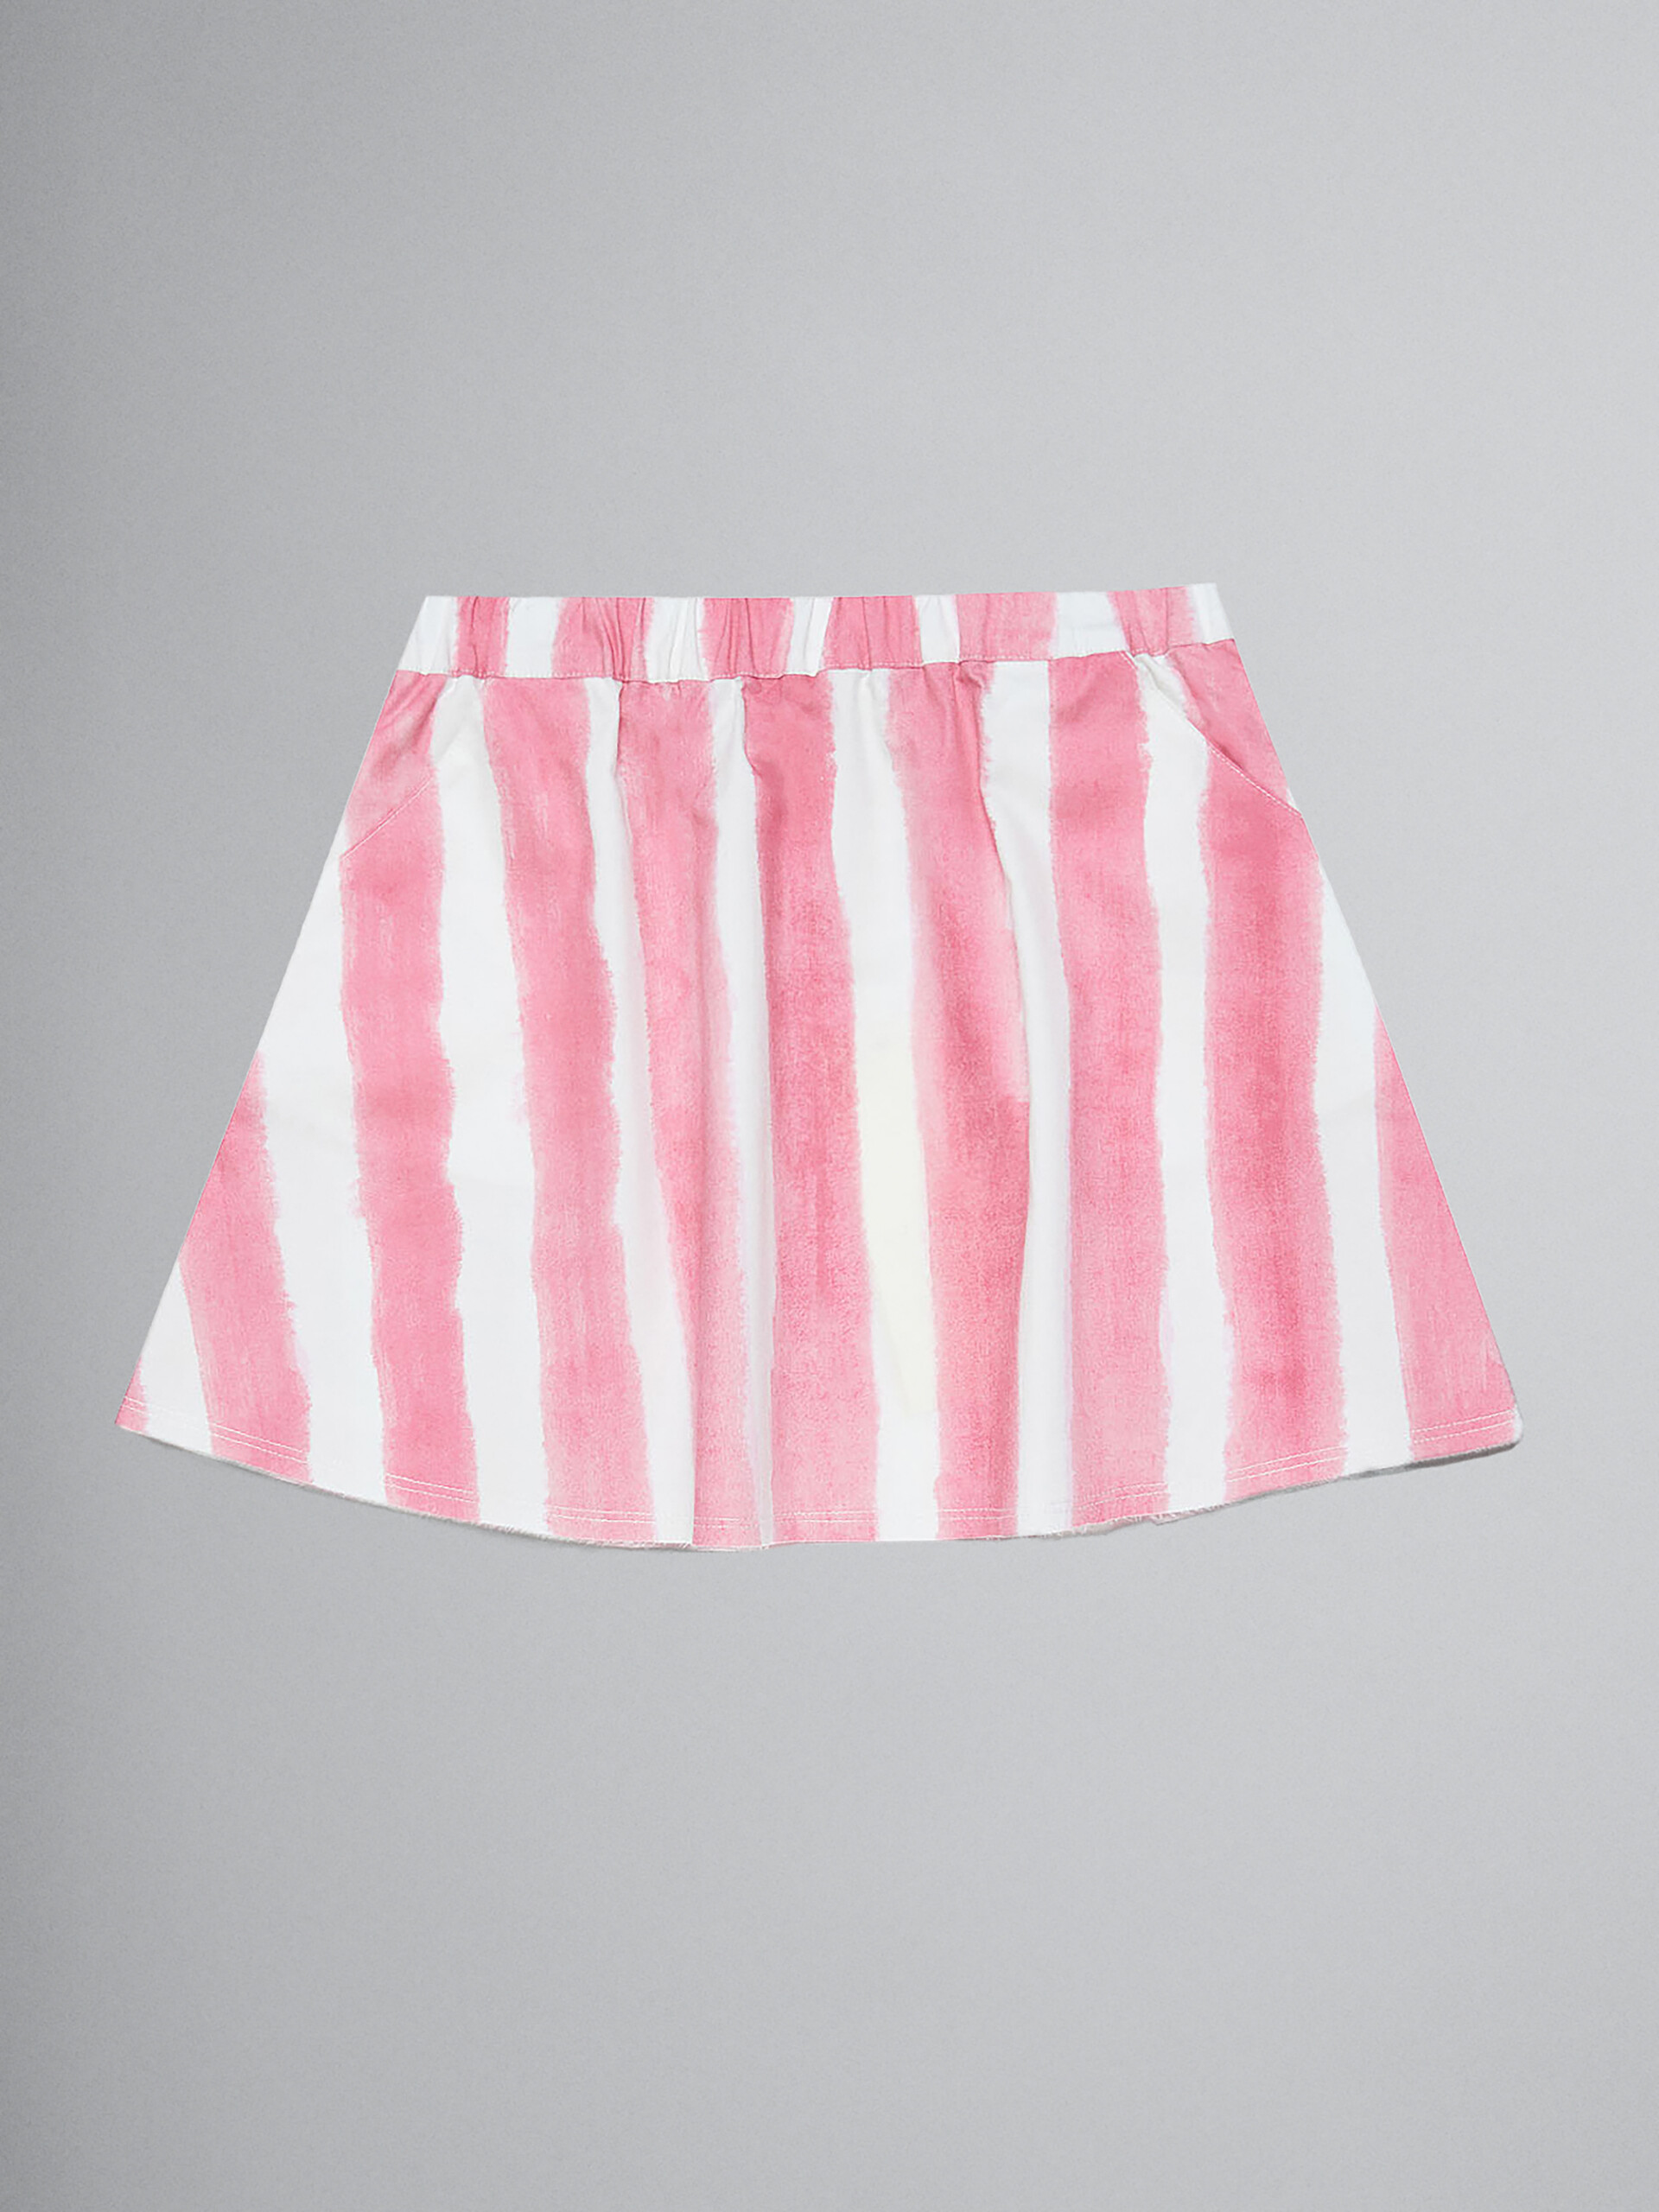 Falda rosa de gabardina con motivo de rayas en toda la superficie - Faldas - Image 1